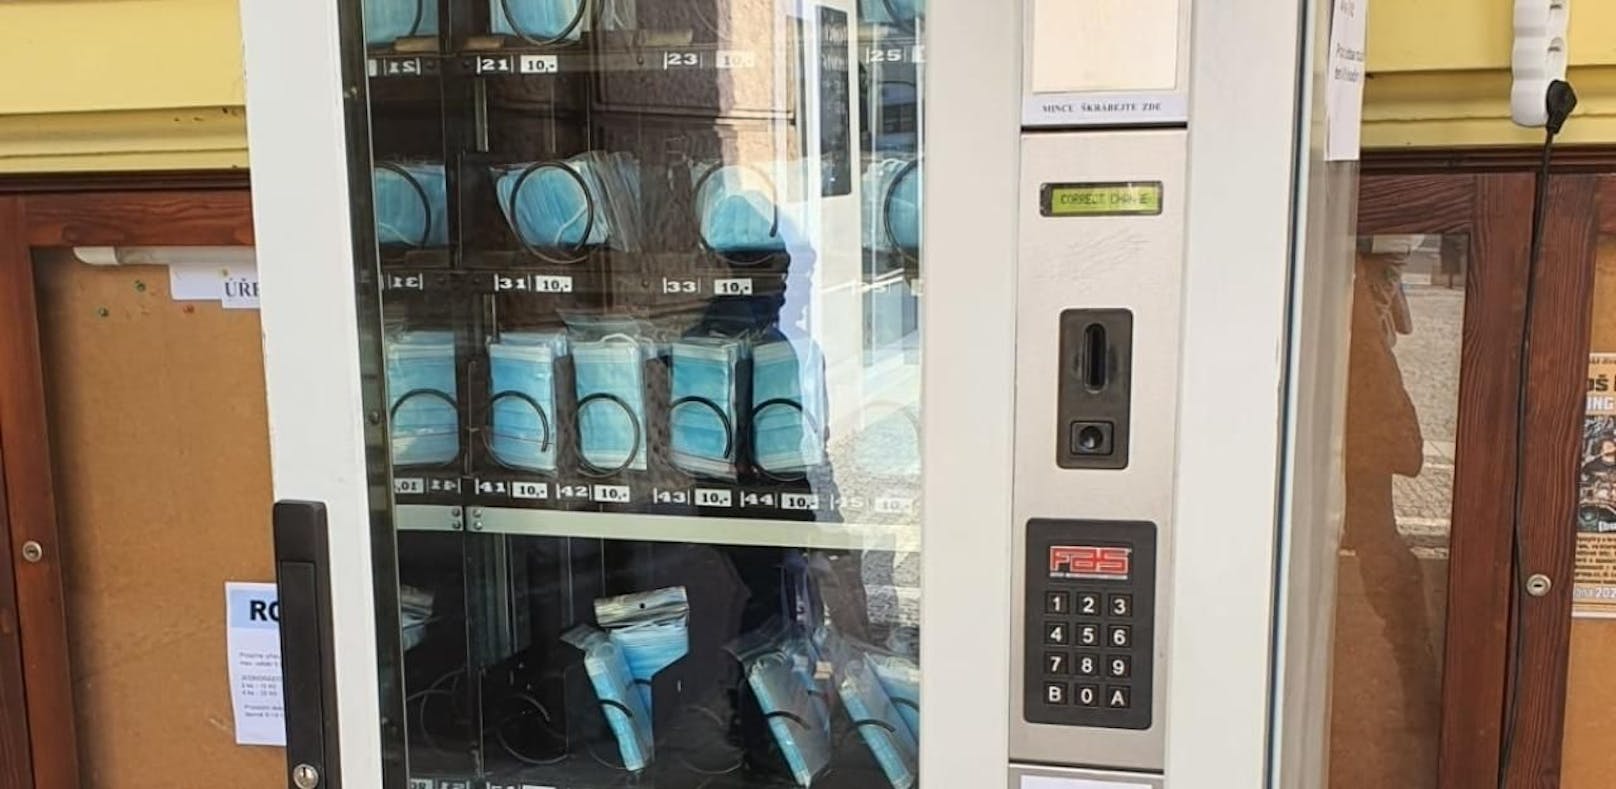 Leserreporter: In der tschechischen Republik soll es Masken in Automaten geben.